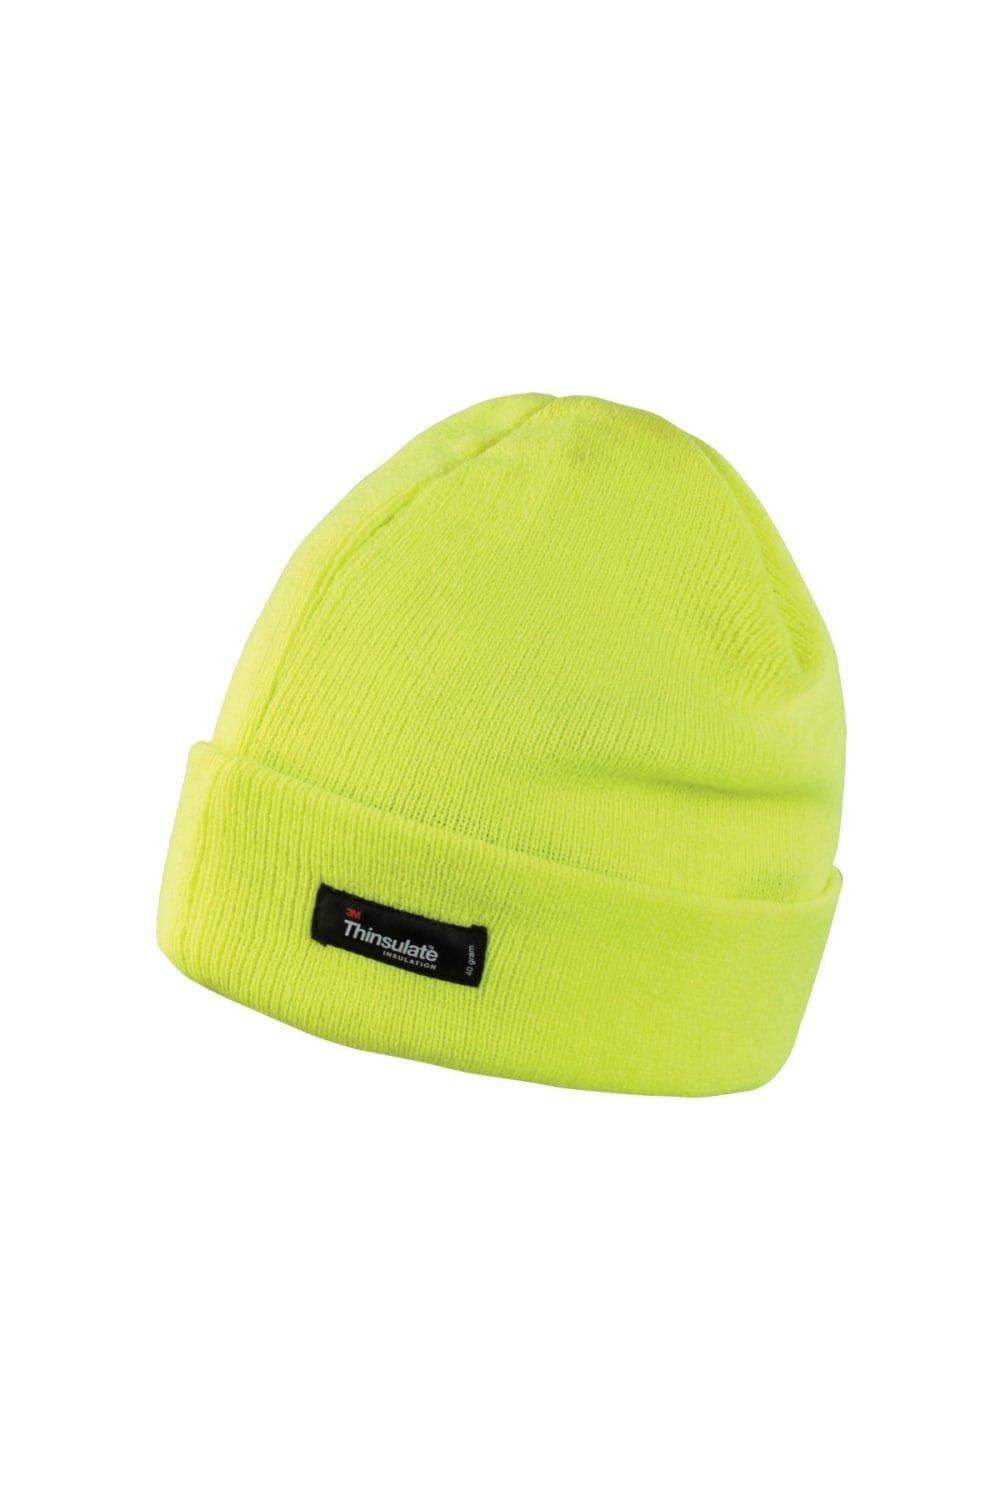 Легкая термозимняя шапка Thinsulate (3M, 40 г) (2 шт. в упаковке) Result, желтый фото